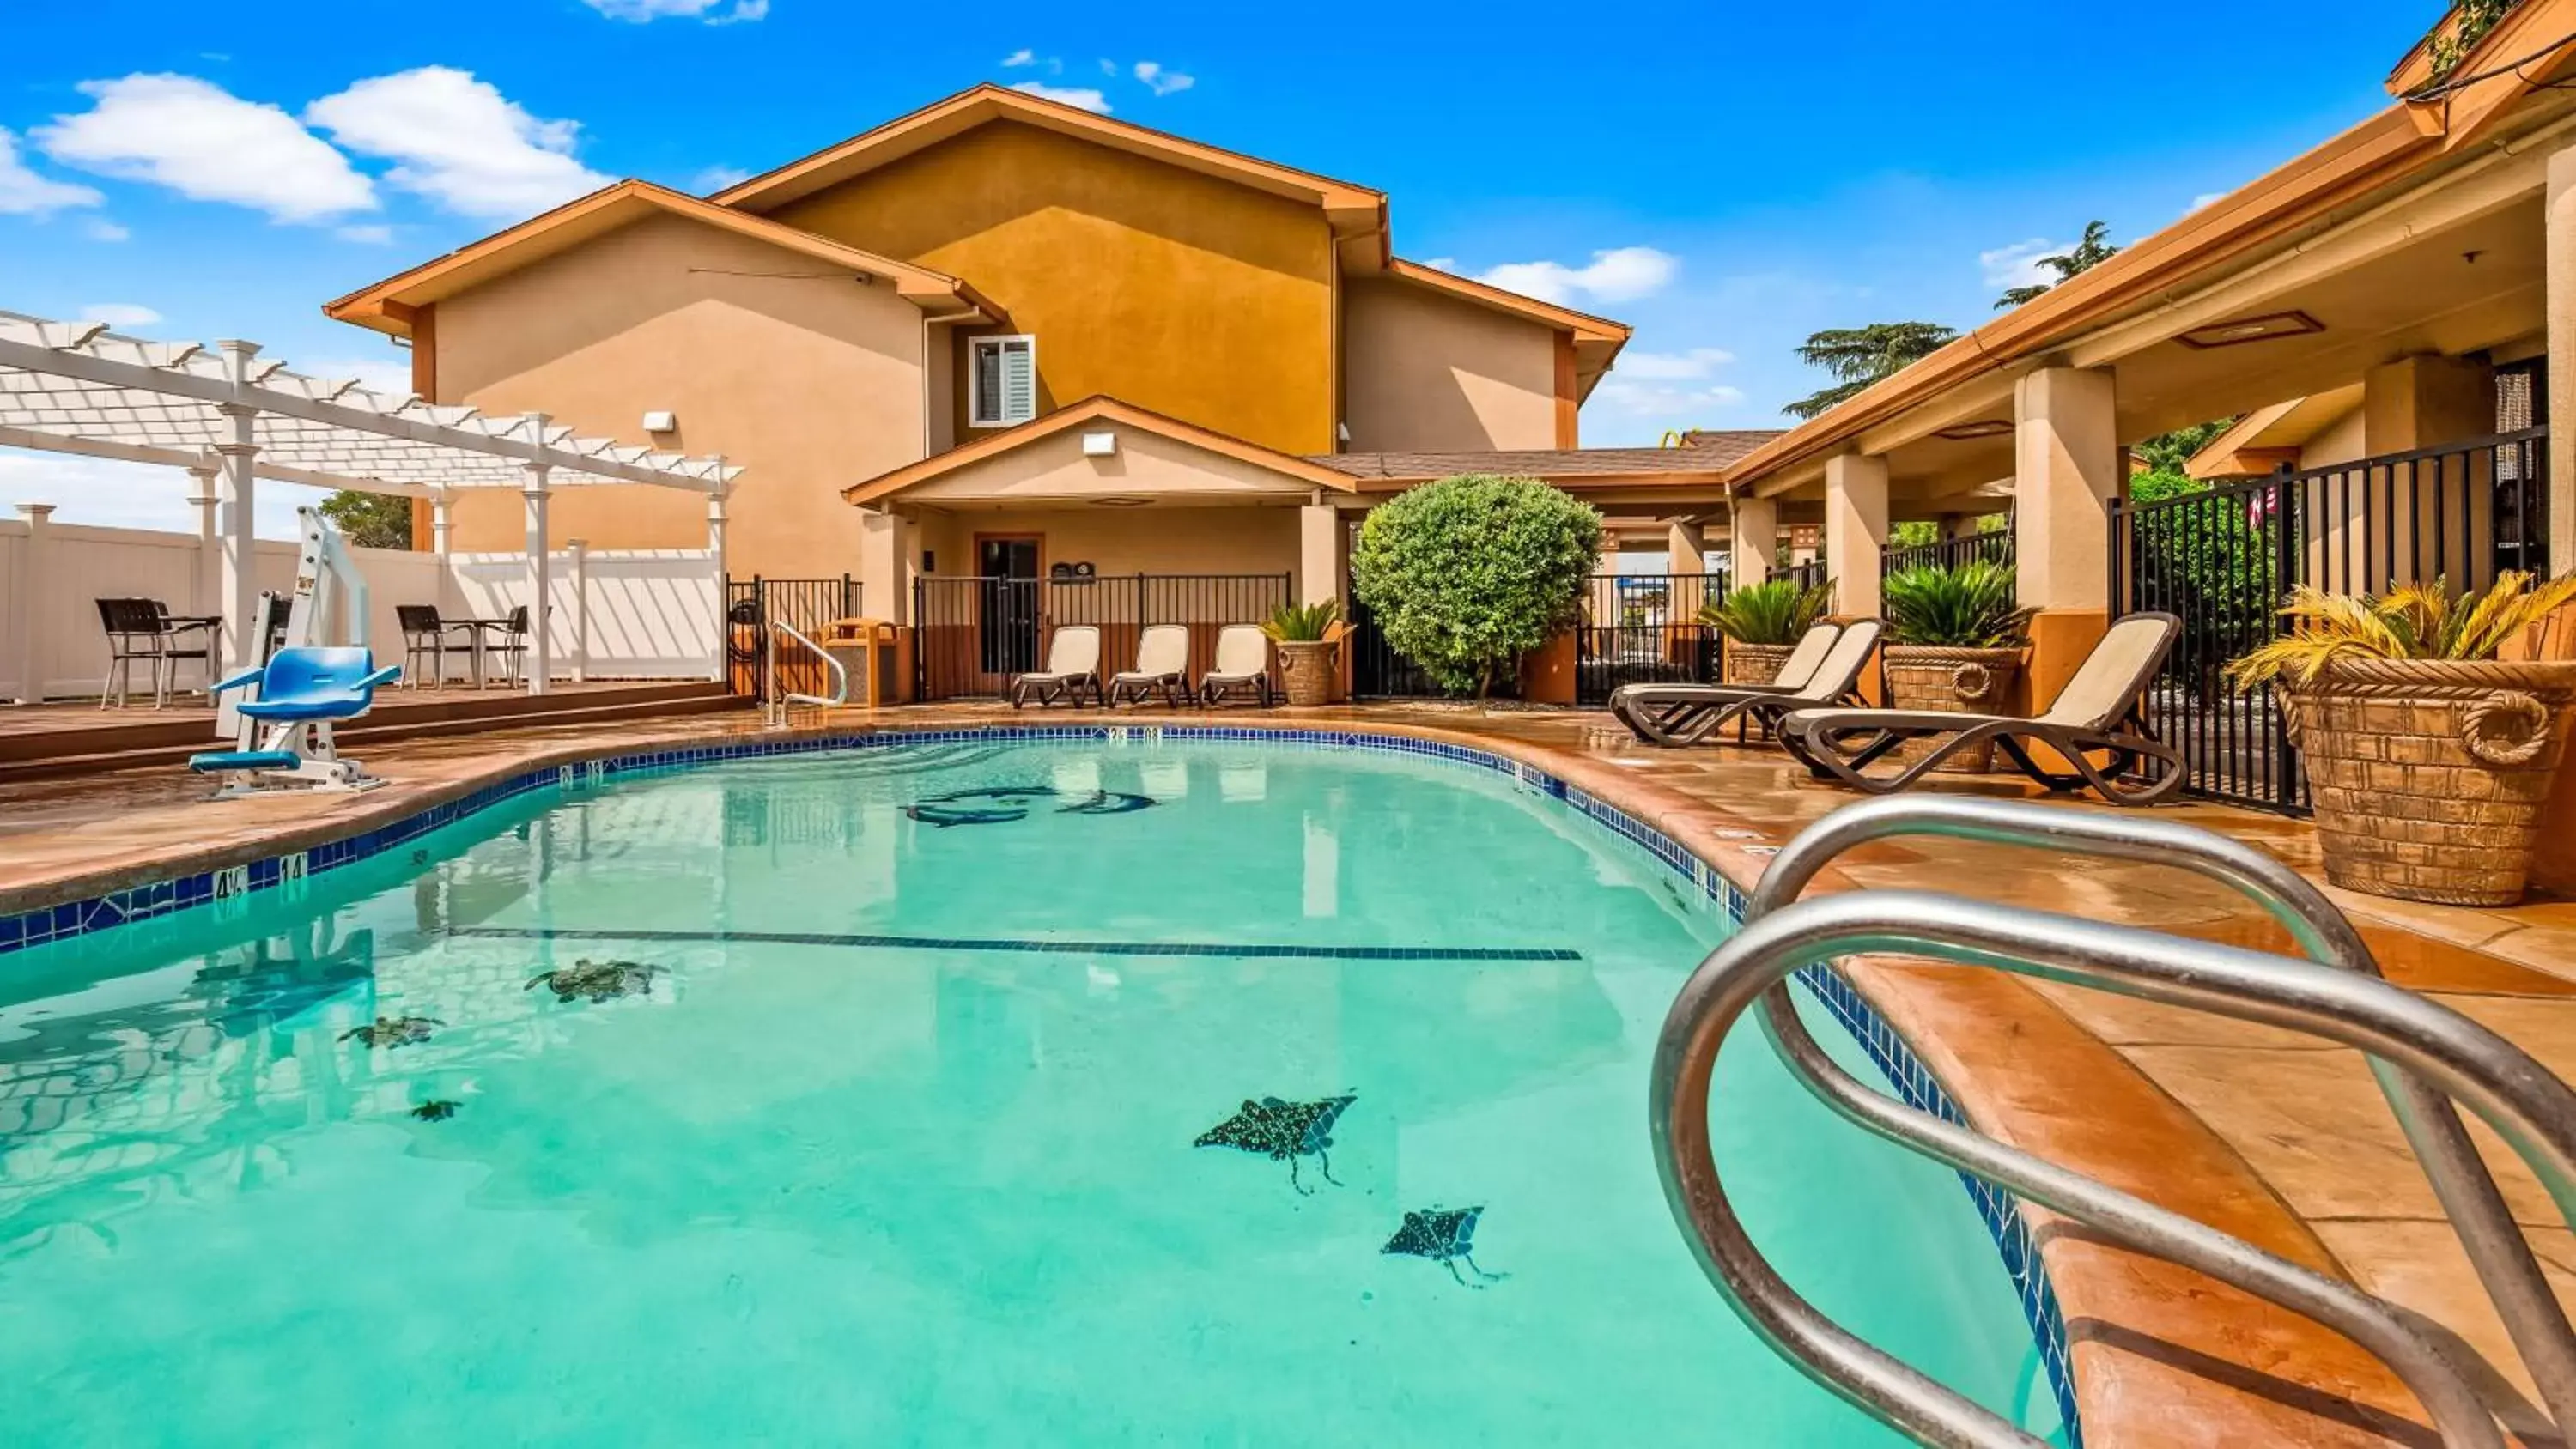 Pool view, Property Building in Best Western Antelope Inn & Suites